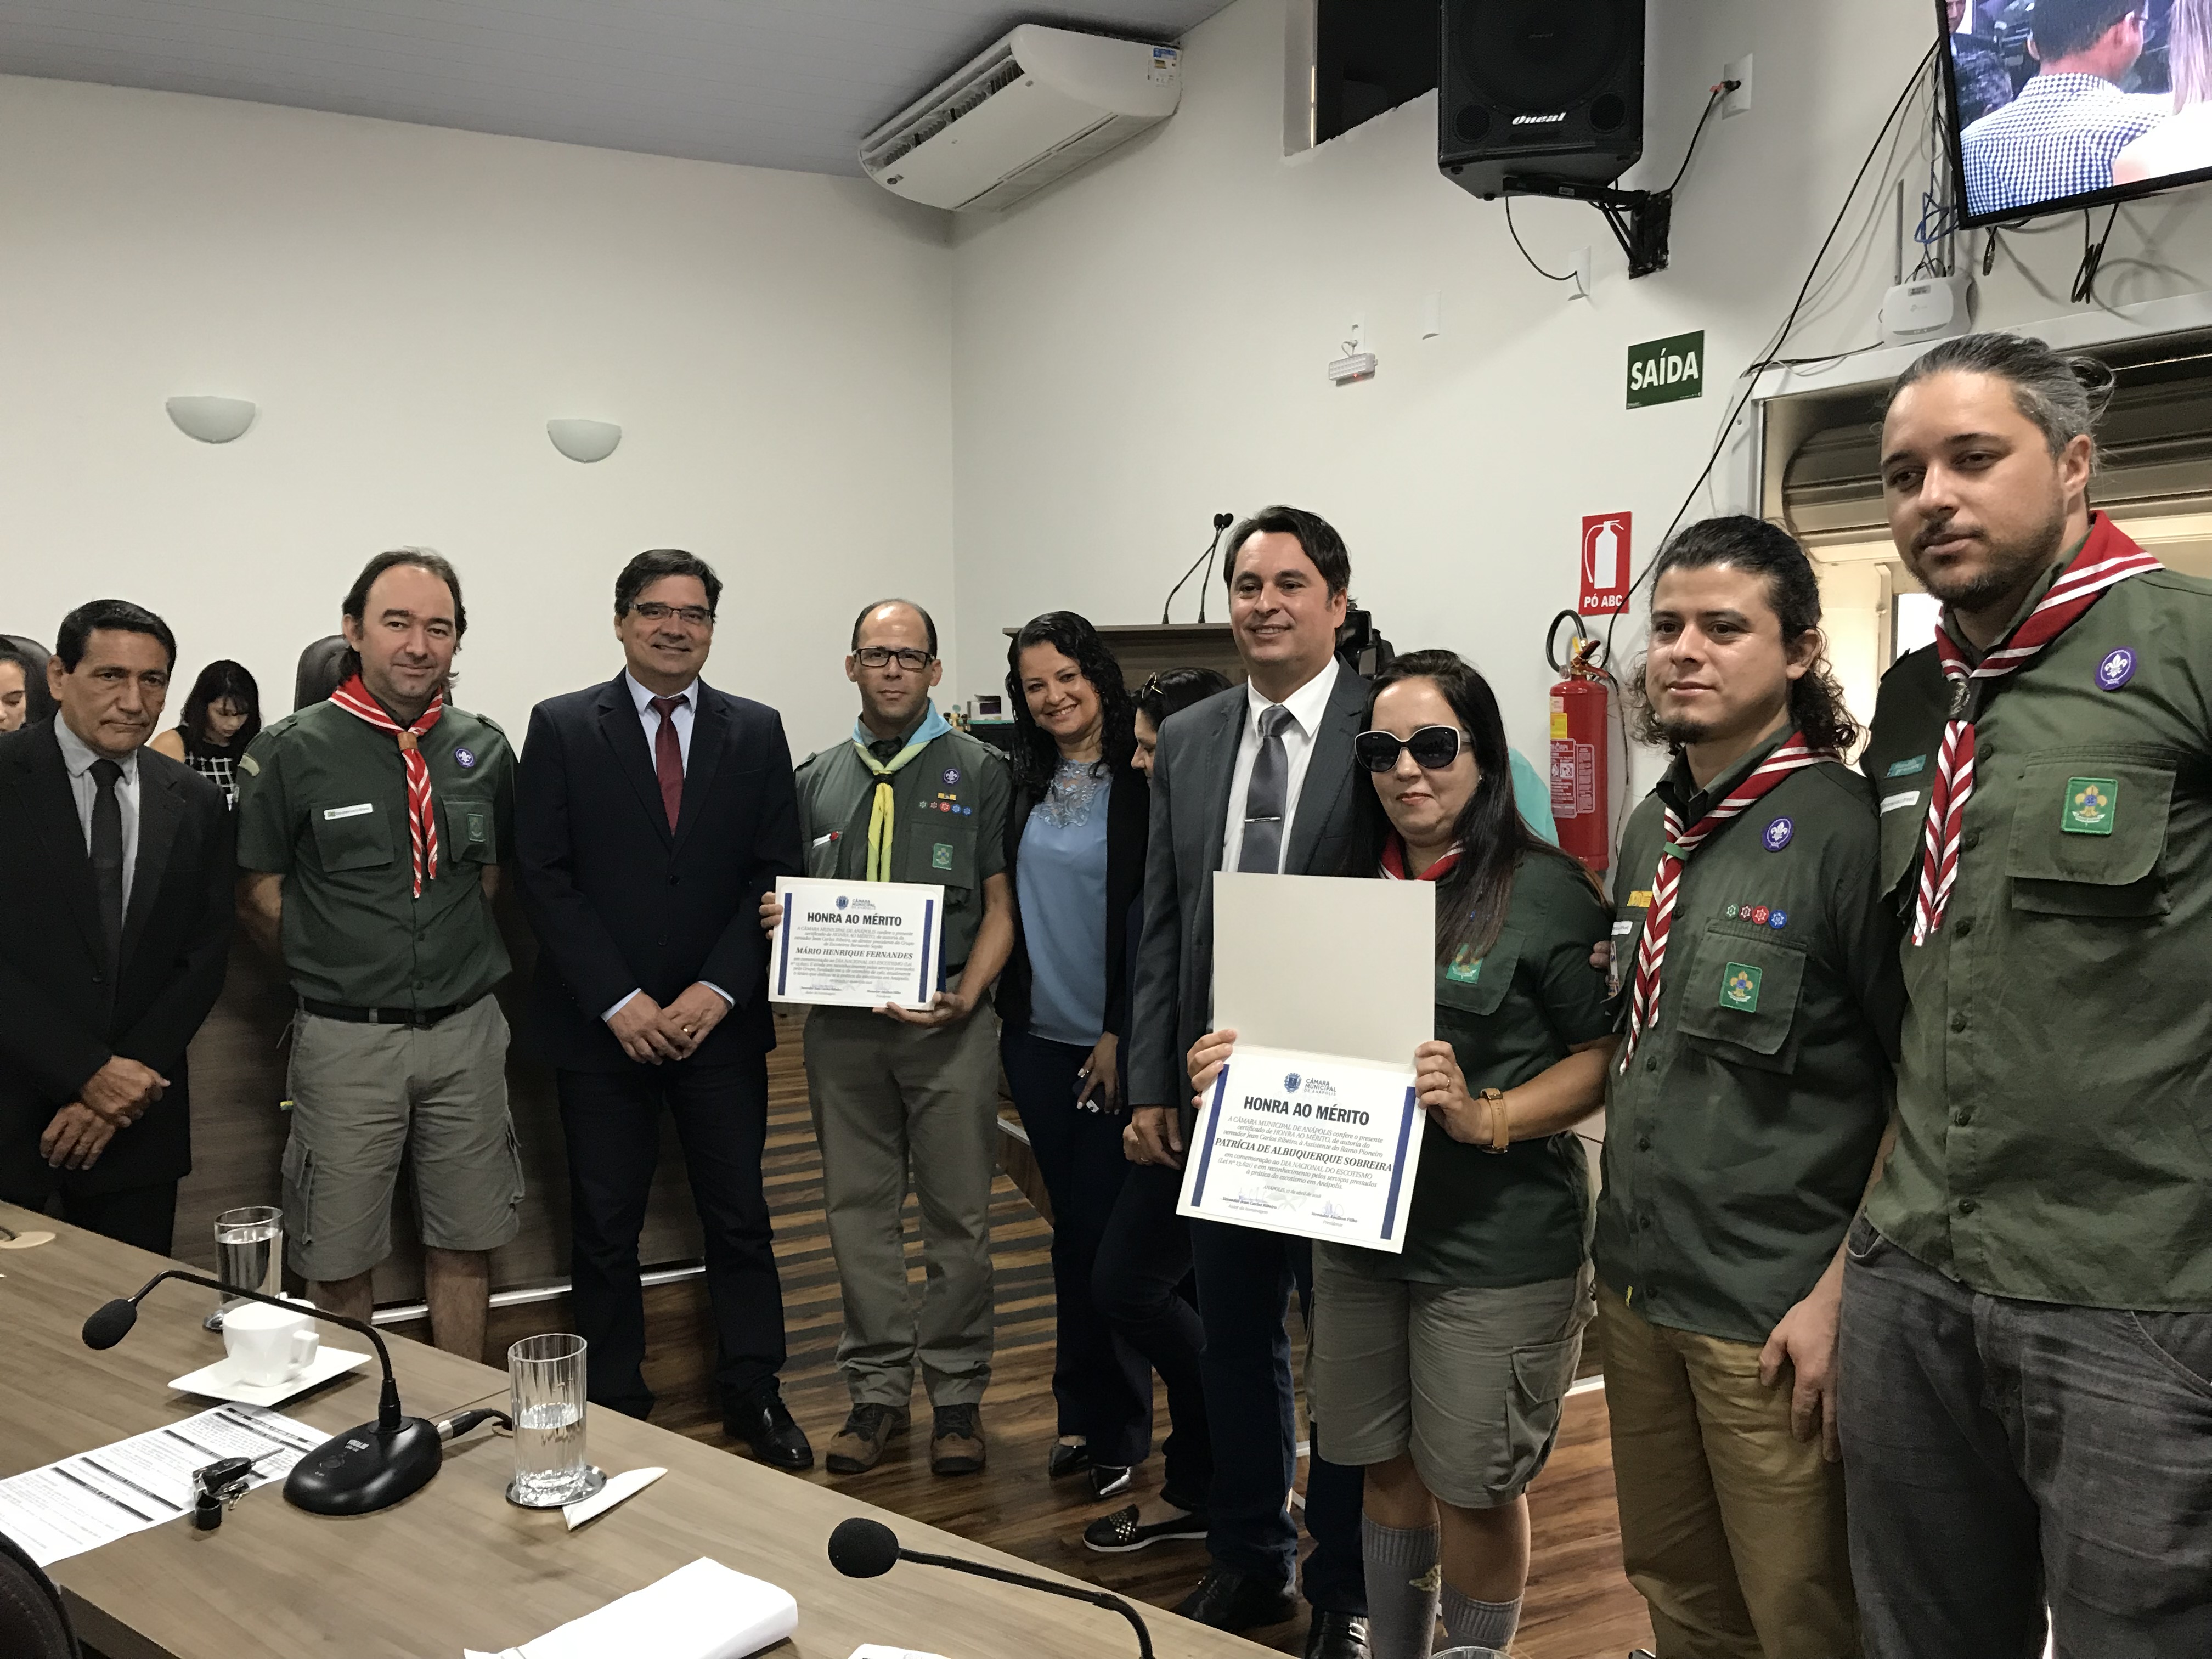 Jean Carlos entrega Certificado de Honra ao Mérito ao Grupo de Escoteiros Bernardo Sayão